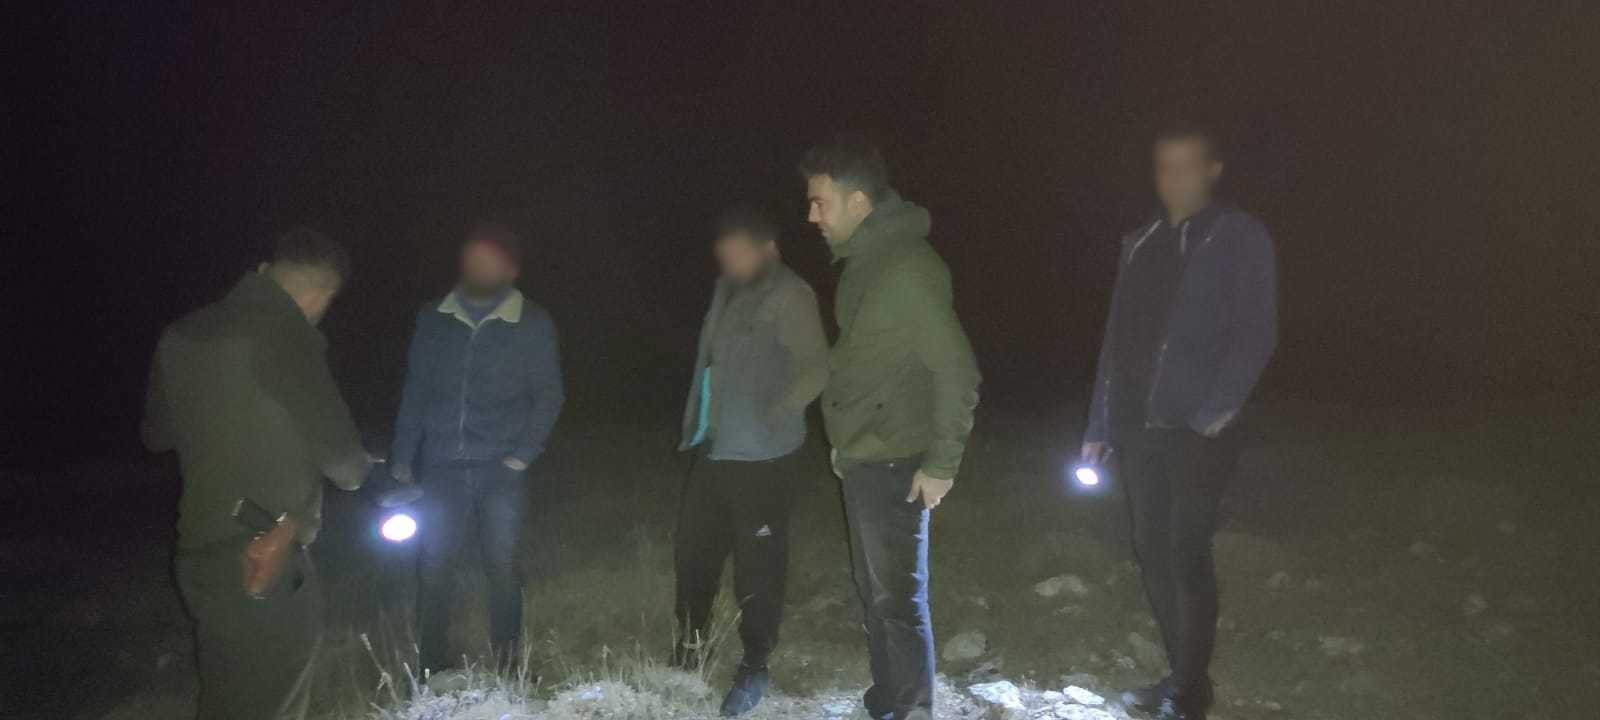 Projektörle yasadışı av yapan 3 kişiye 12 bin lira ceza #kahramanmaras